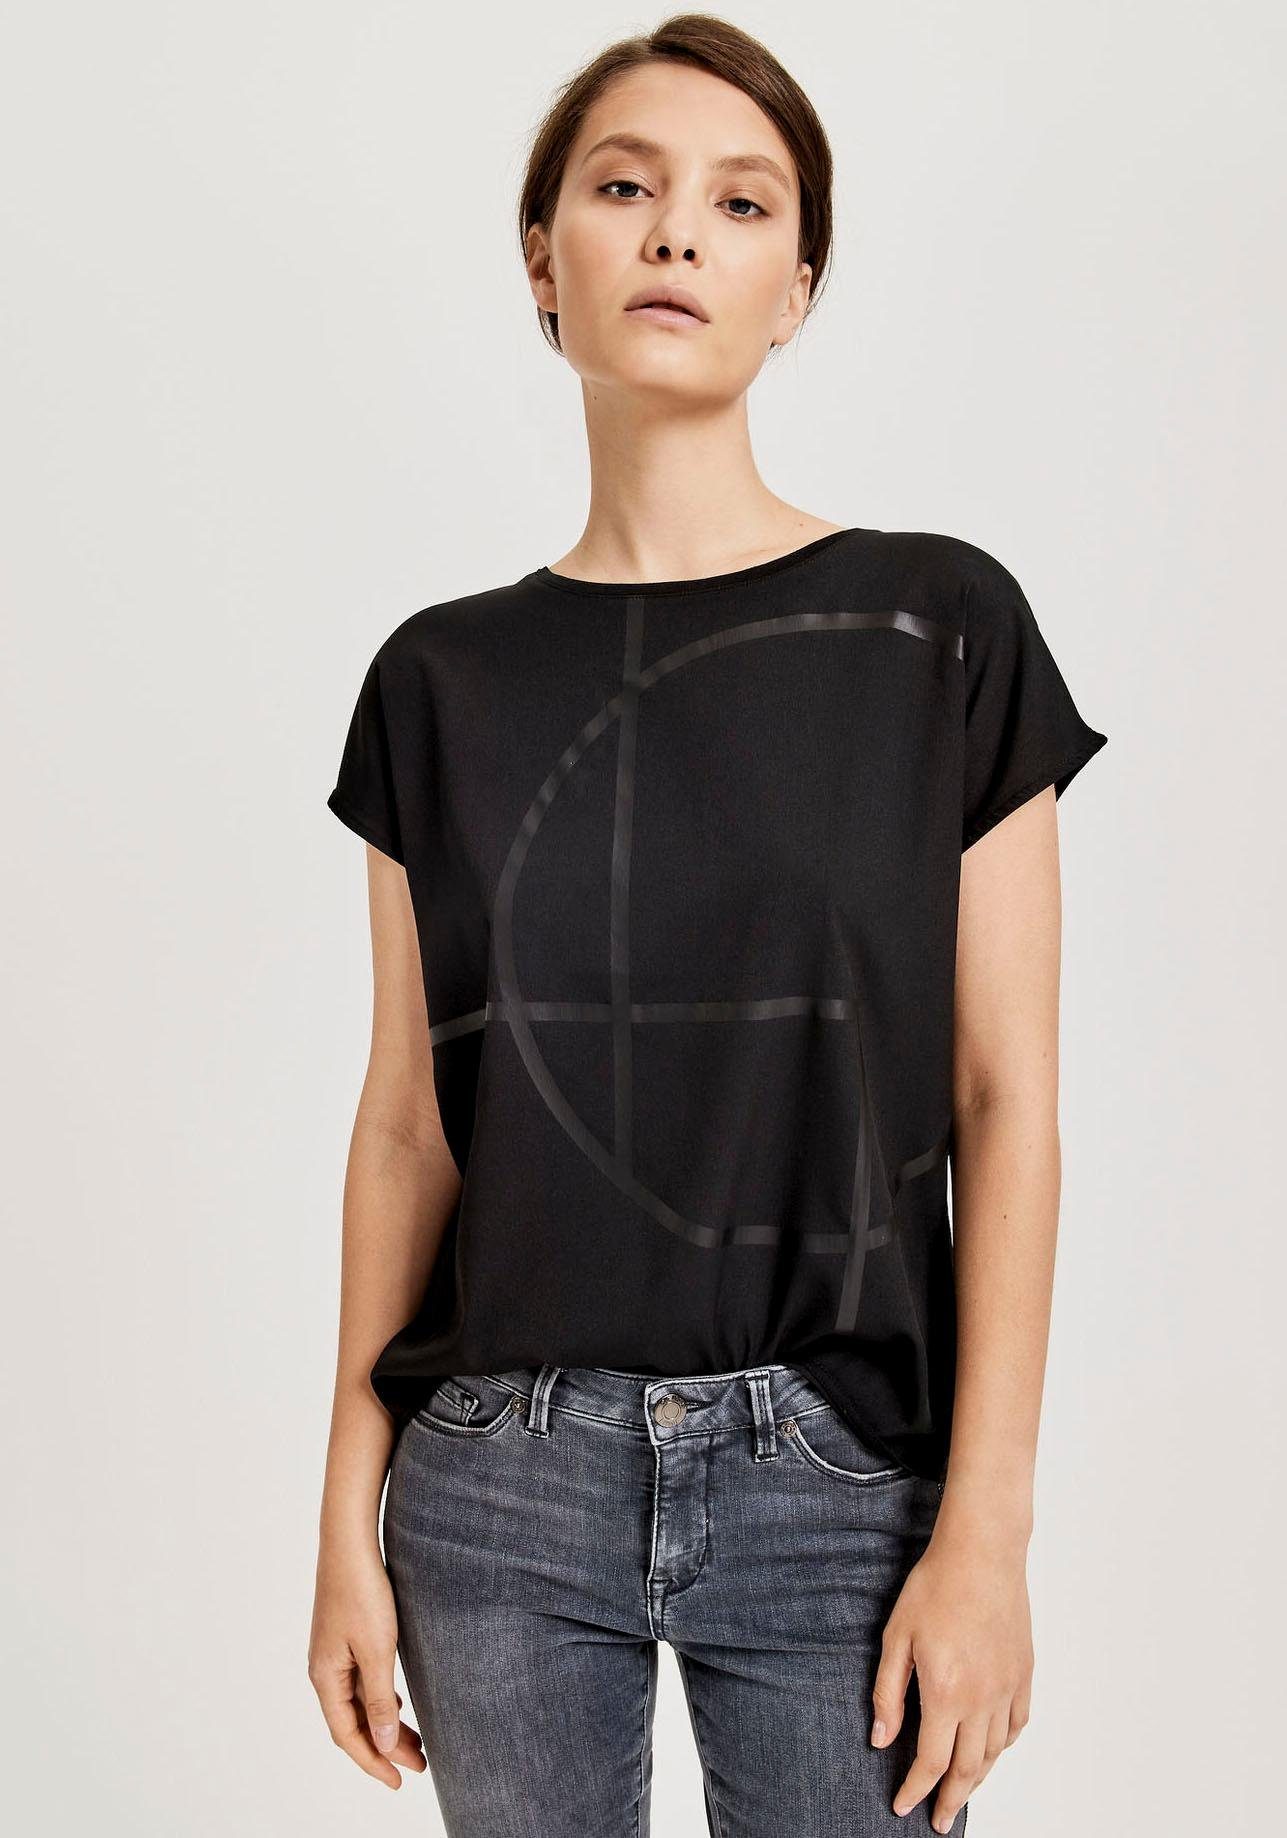 OPUS Blusenshirt »Seomi« vorn Web, hinten elastischer Single Jersey online  kaufen | OTTO